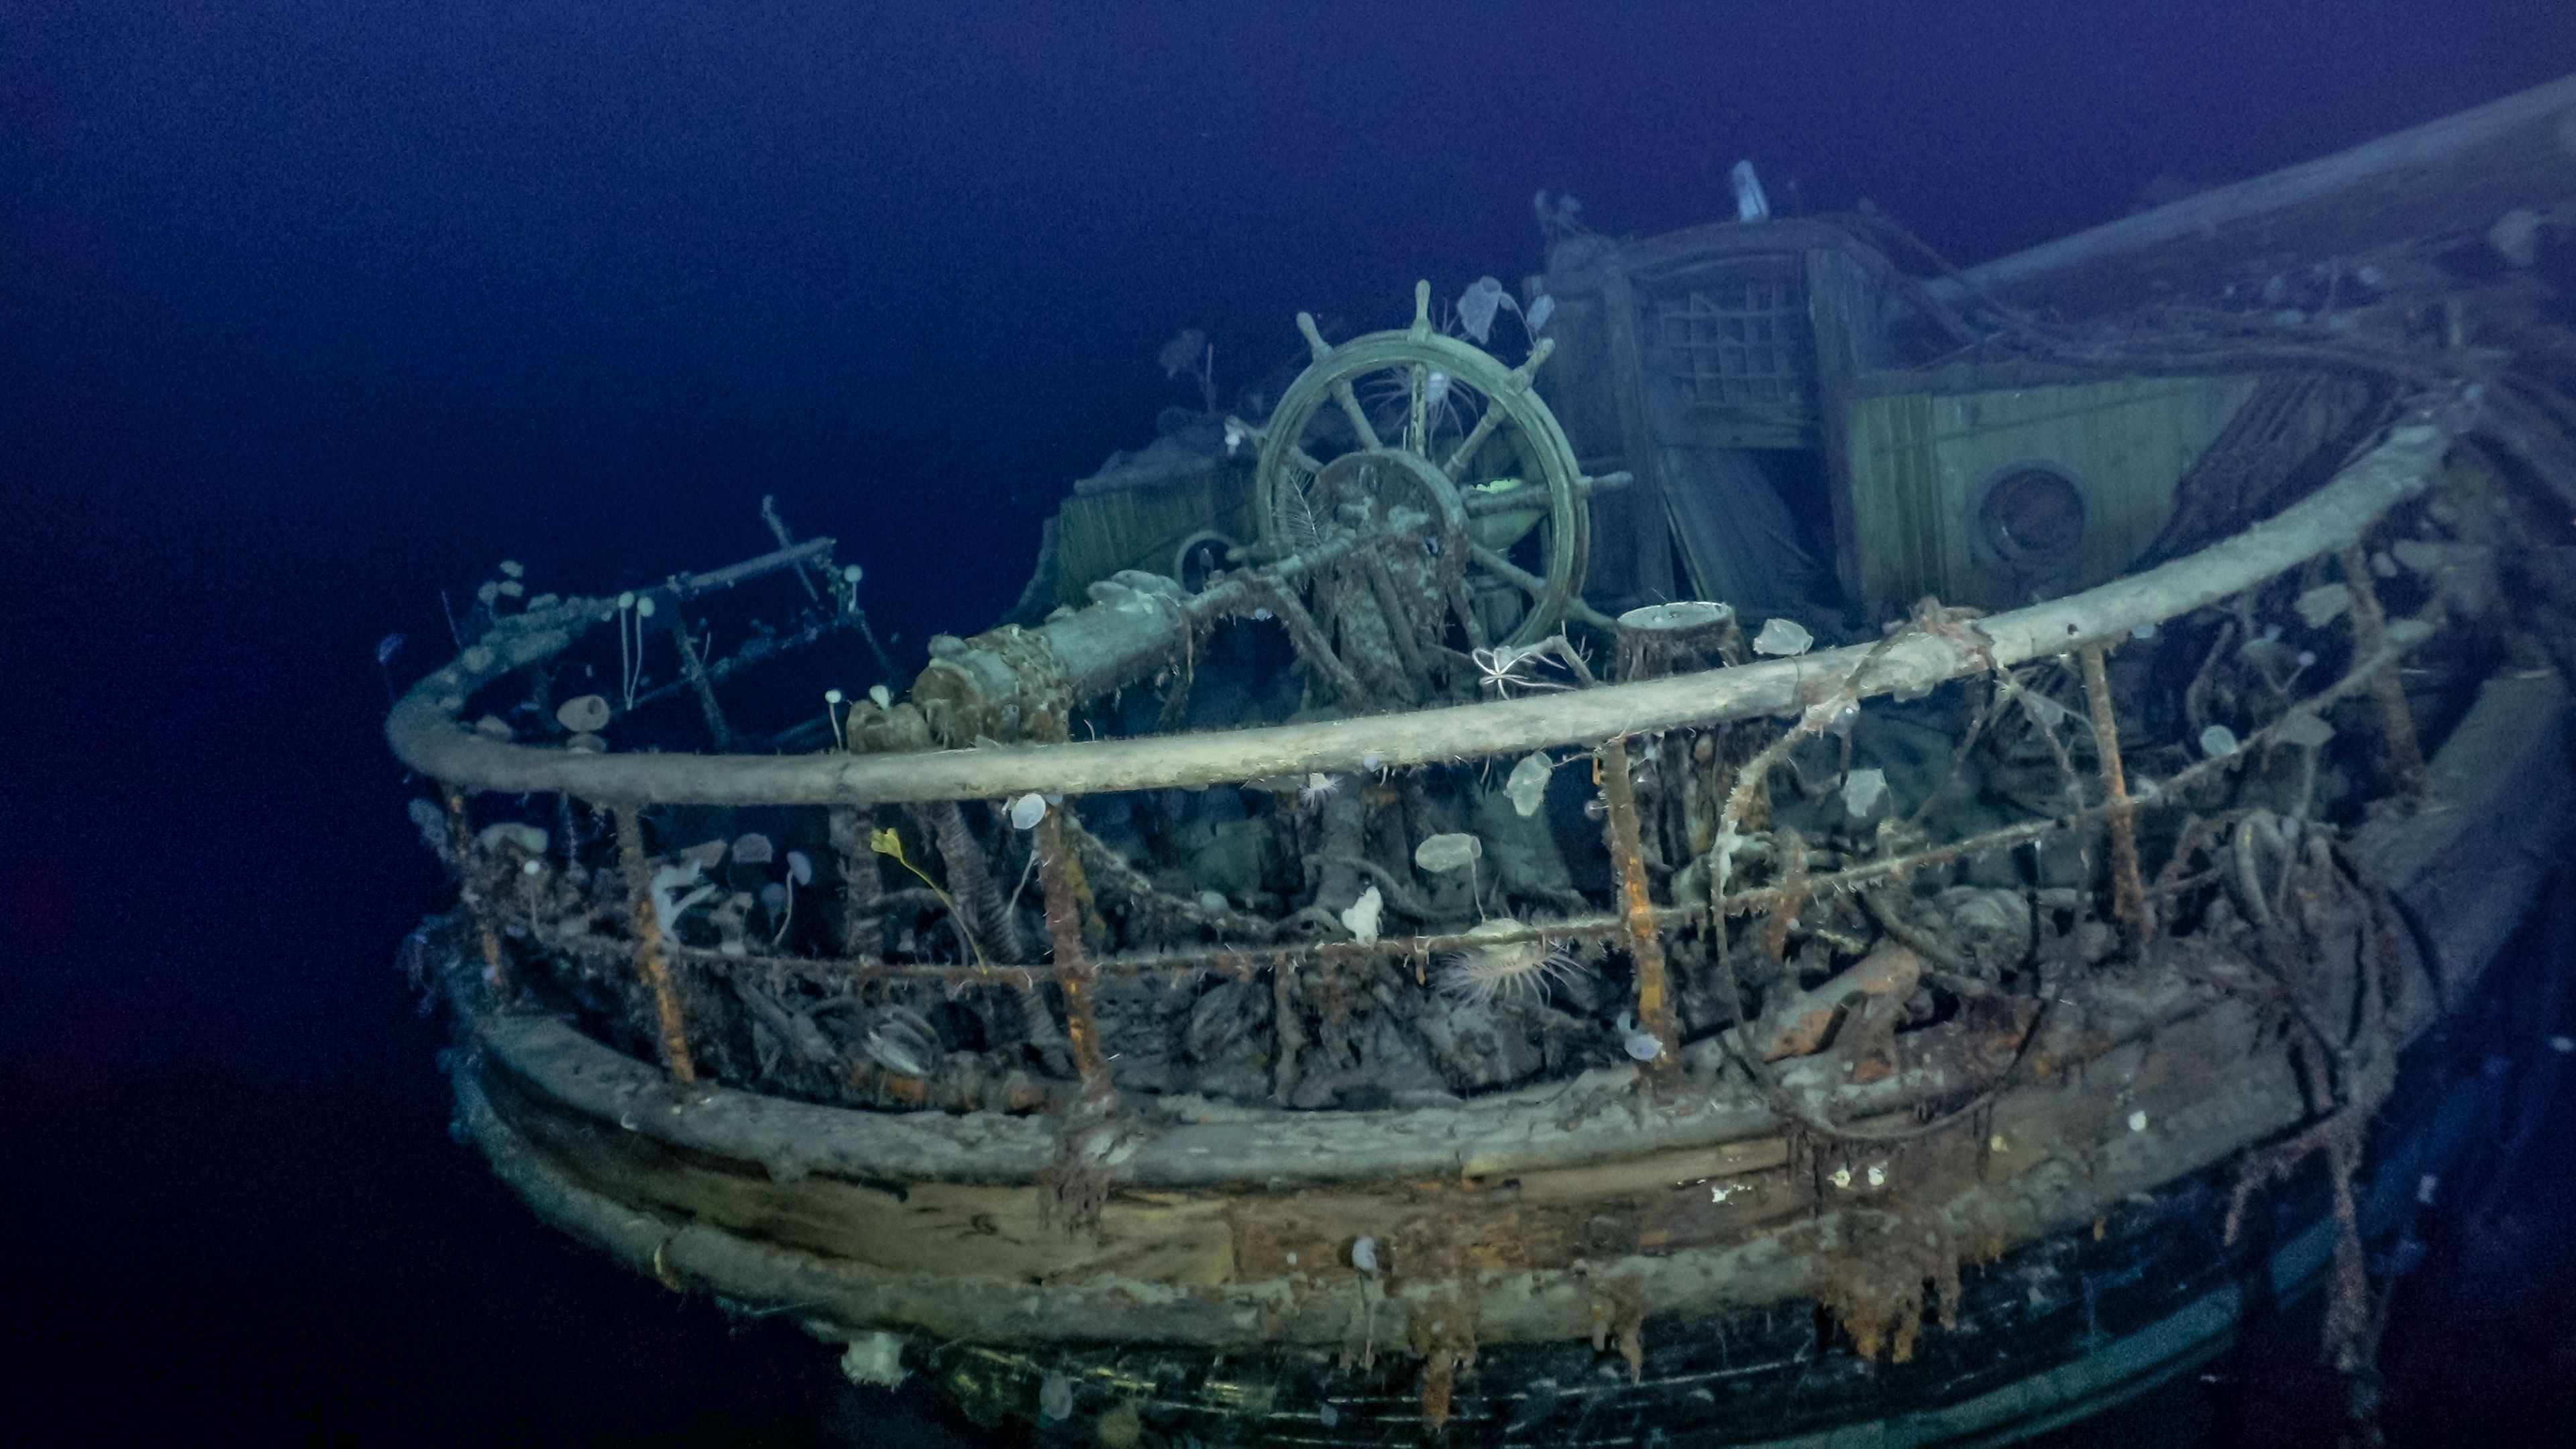 Shipwrecks - LONG ISLAND MARITIME MUSEUM